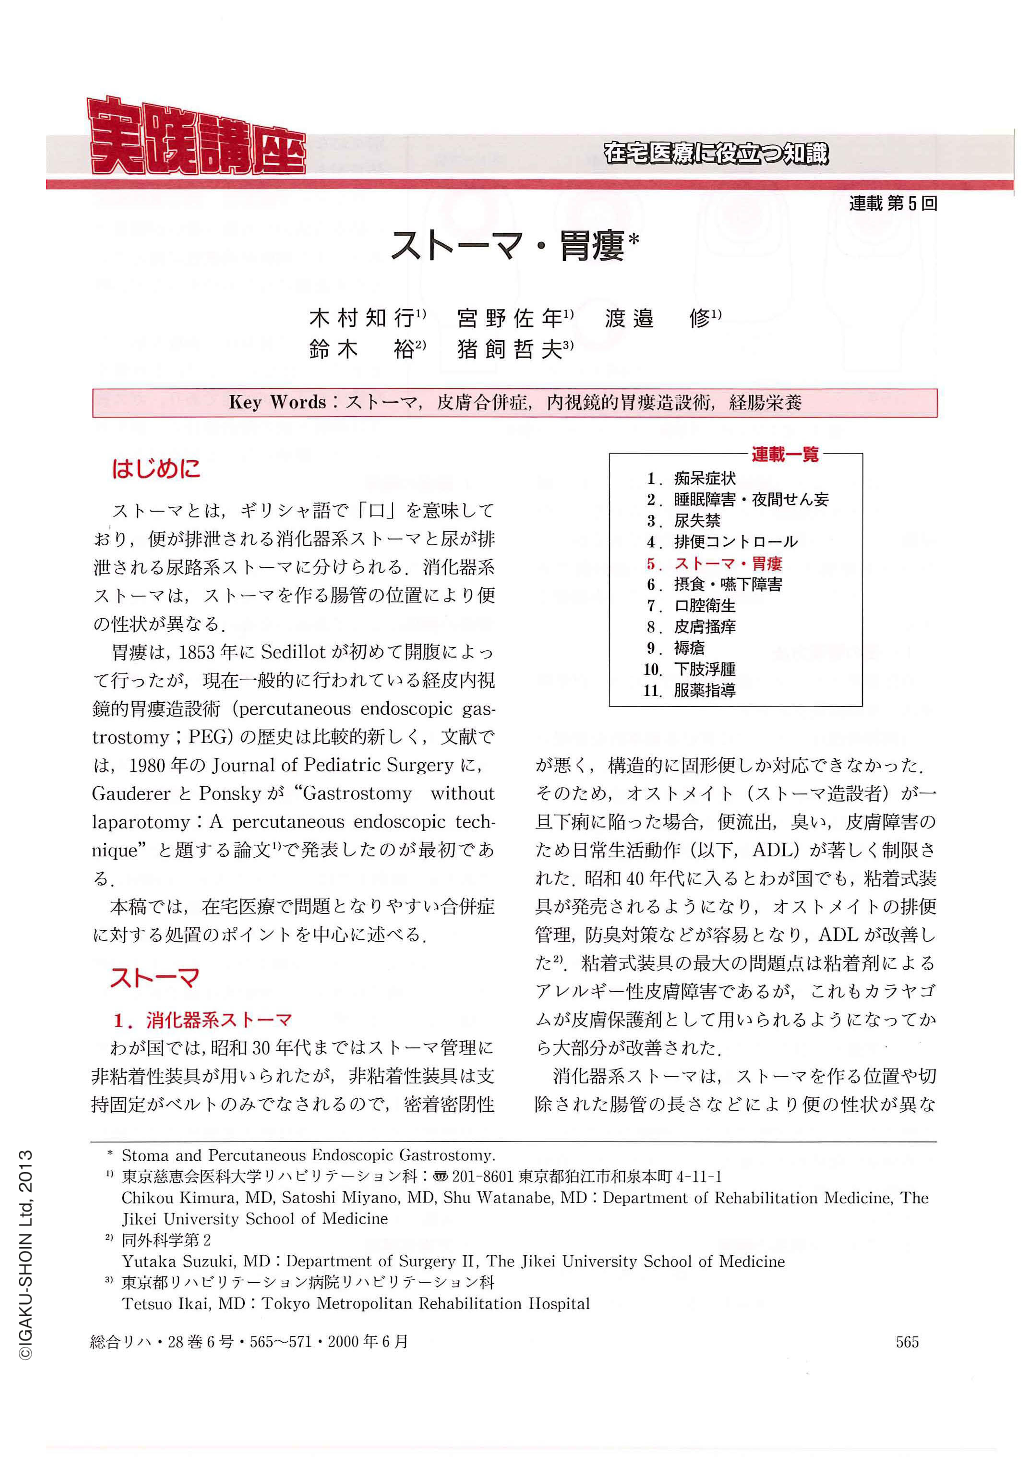 5．ストーマ・胃瘻 (総合リハビリテーション 28巻6号) | 医書.jp